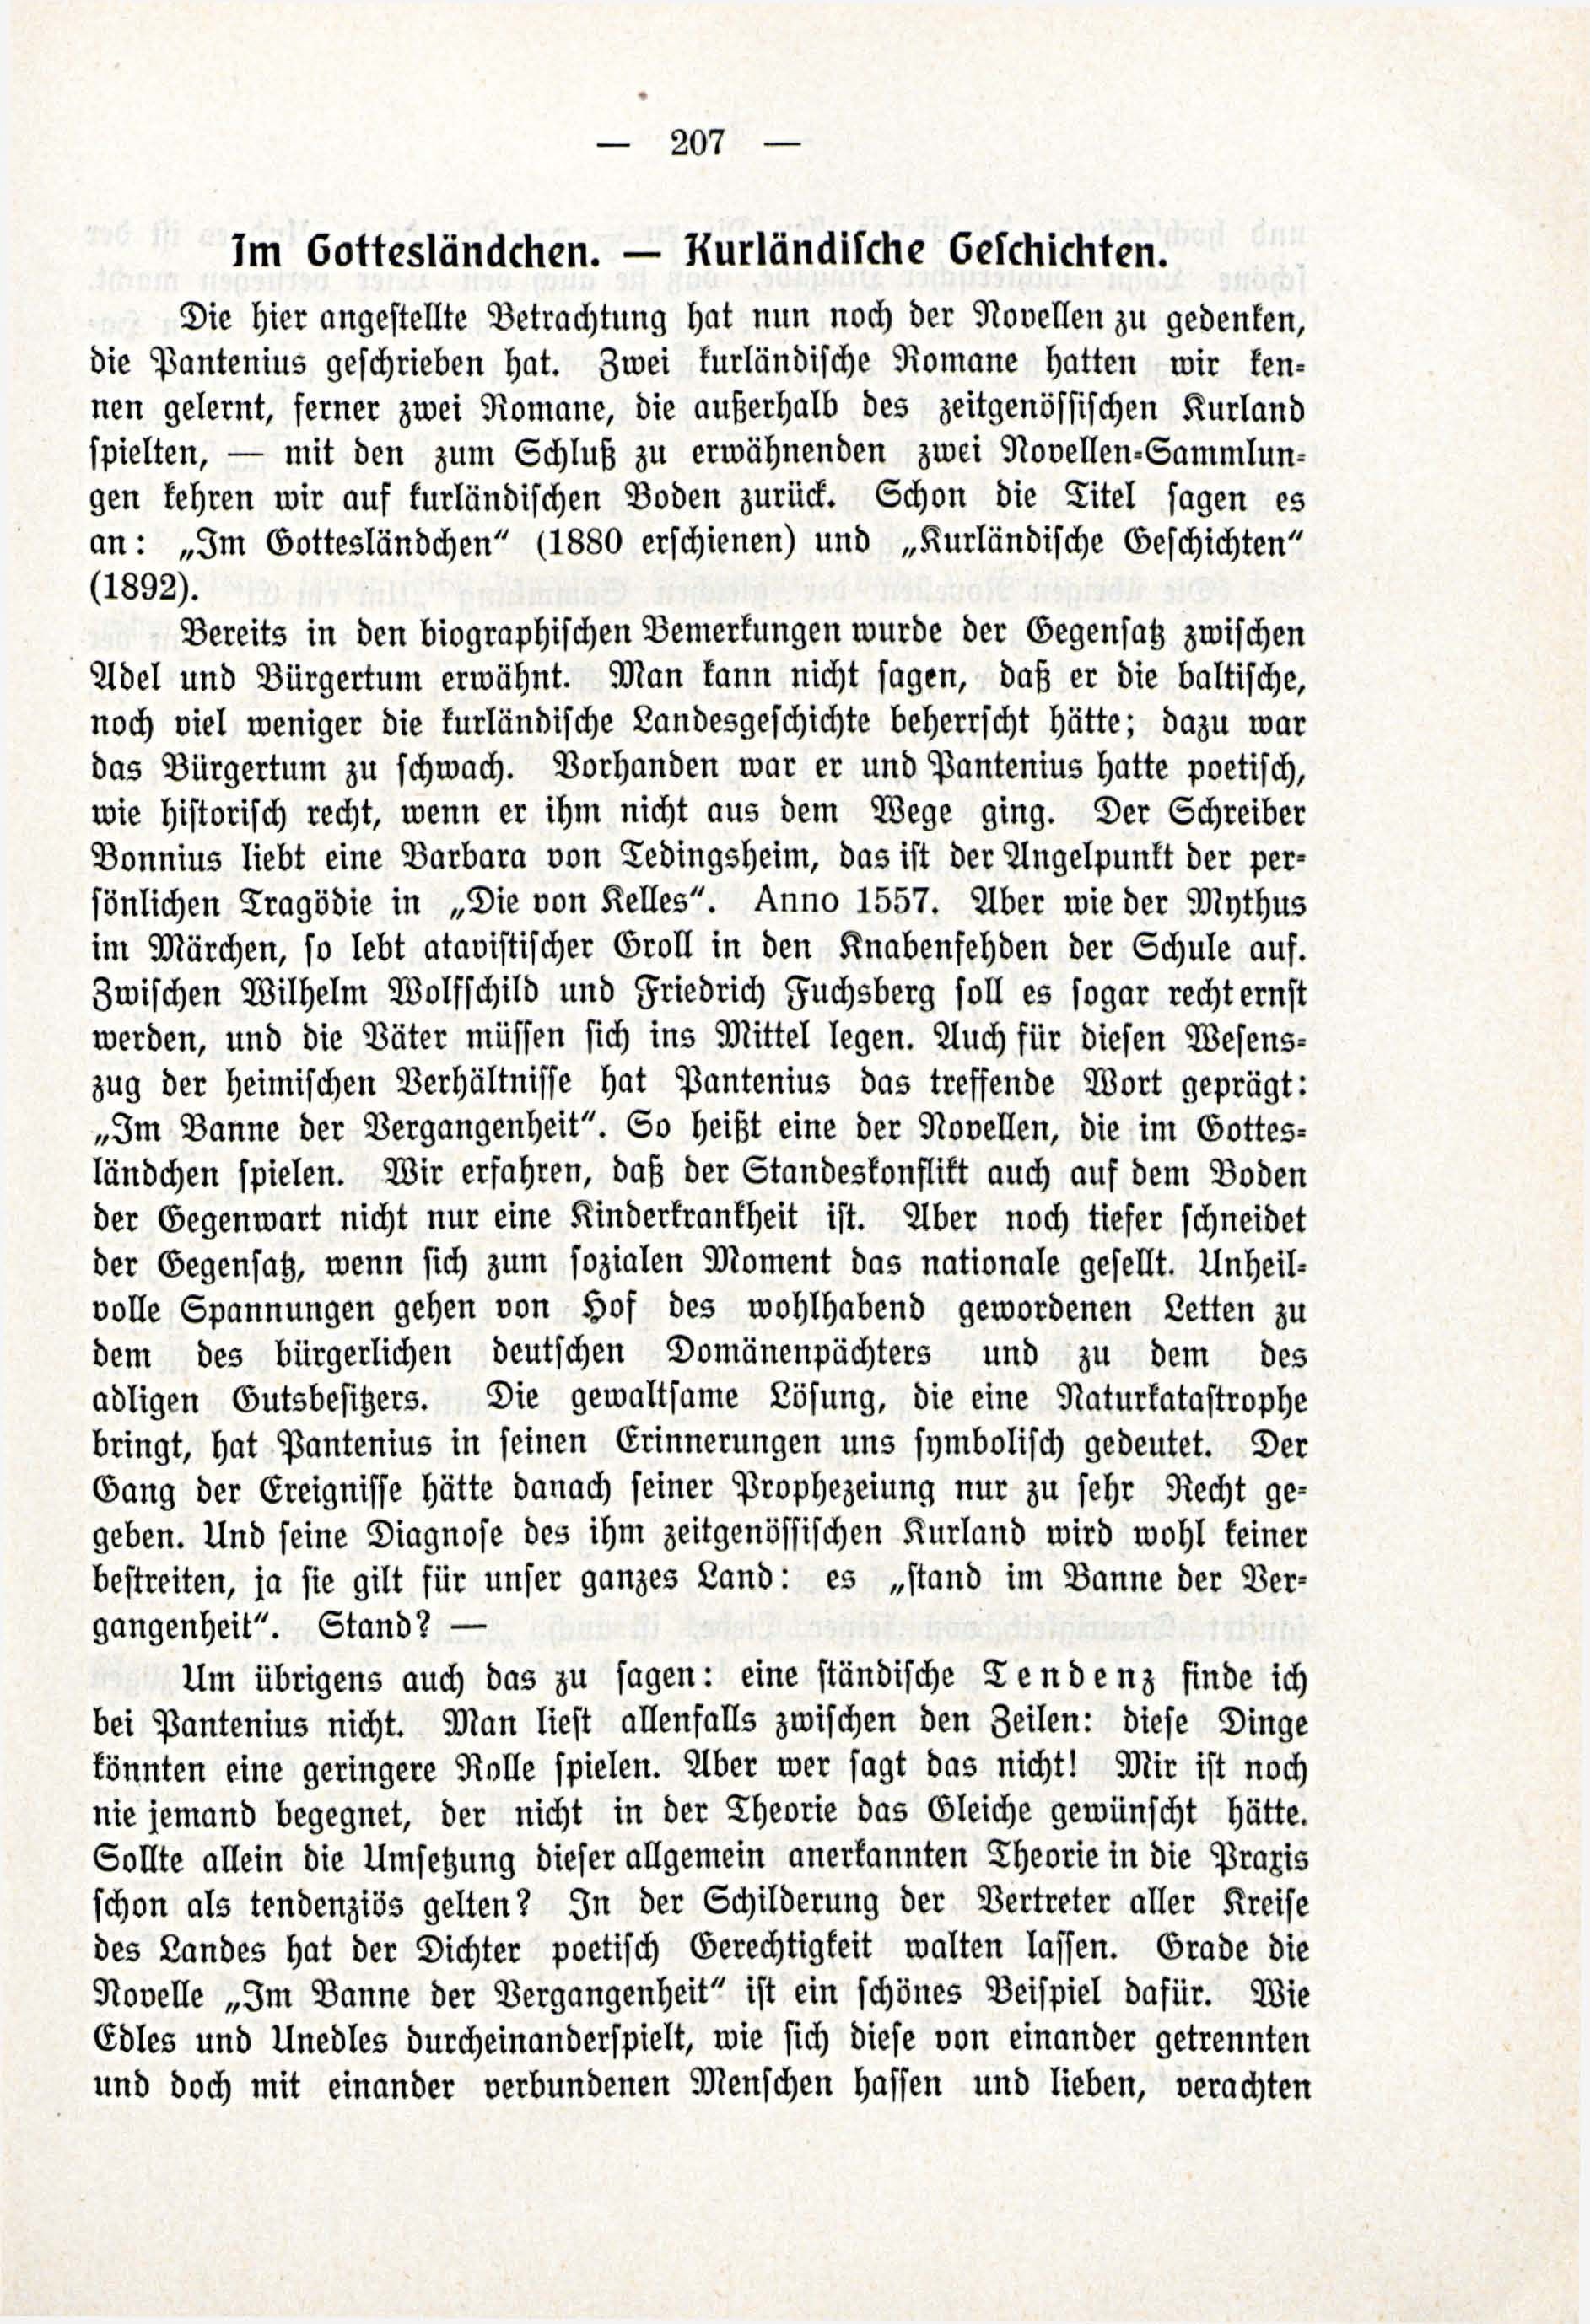 Deutsche Monatsschrift für Russland [3/03] (1914) | 53. (207) Основной текст